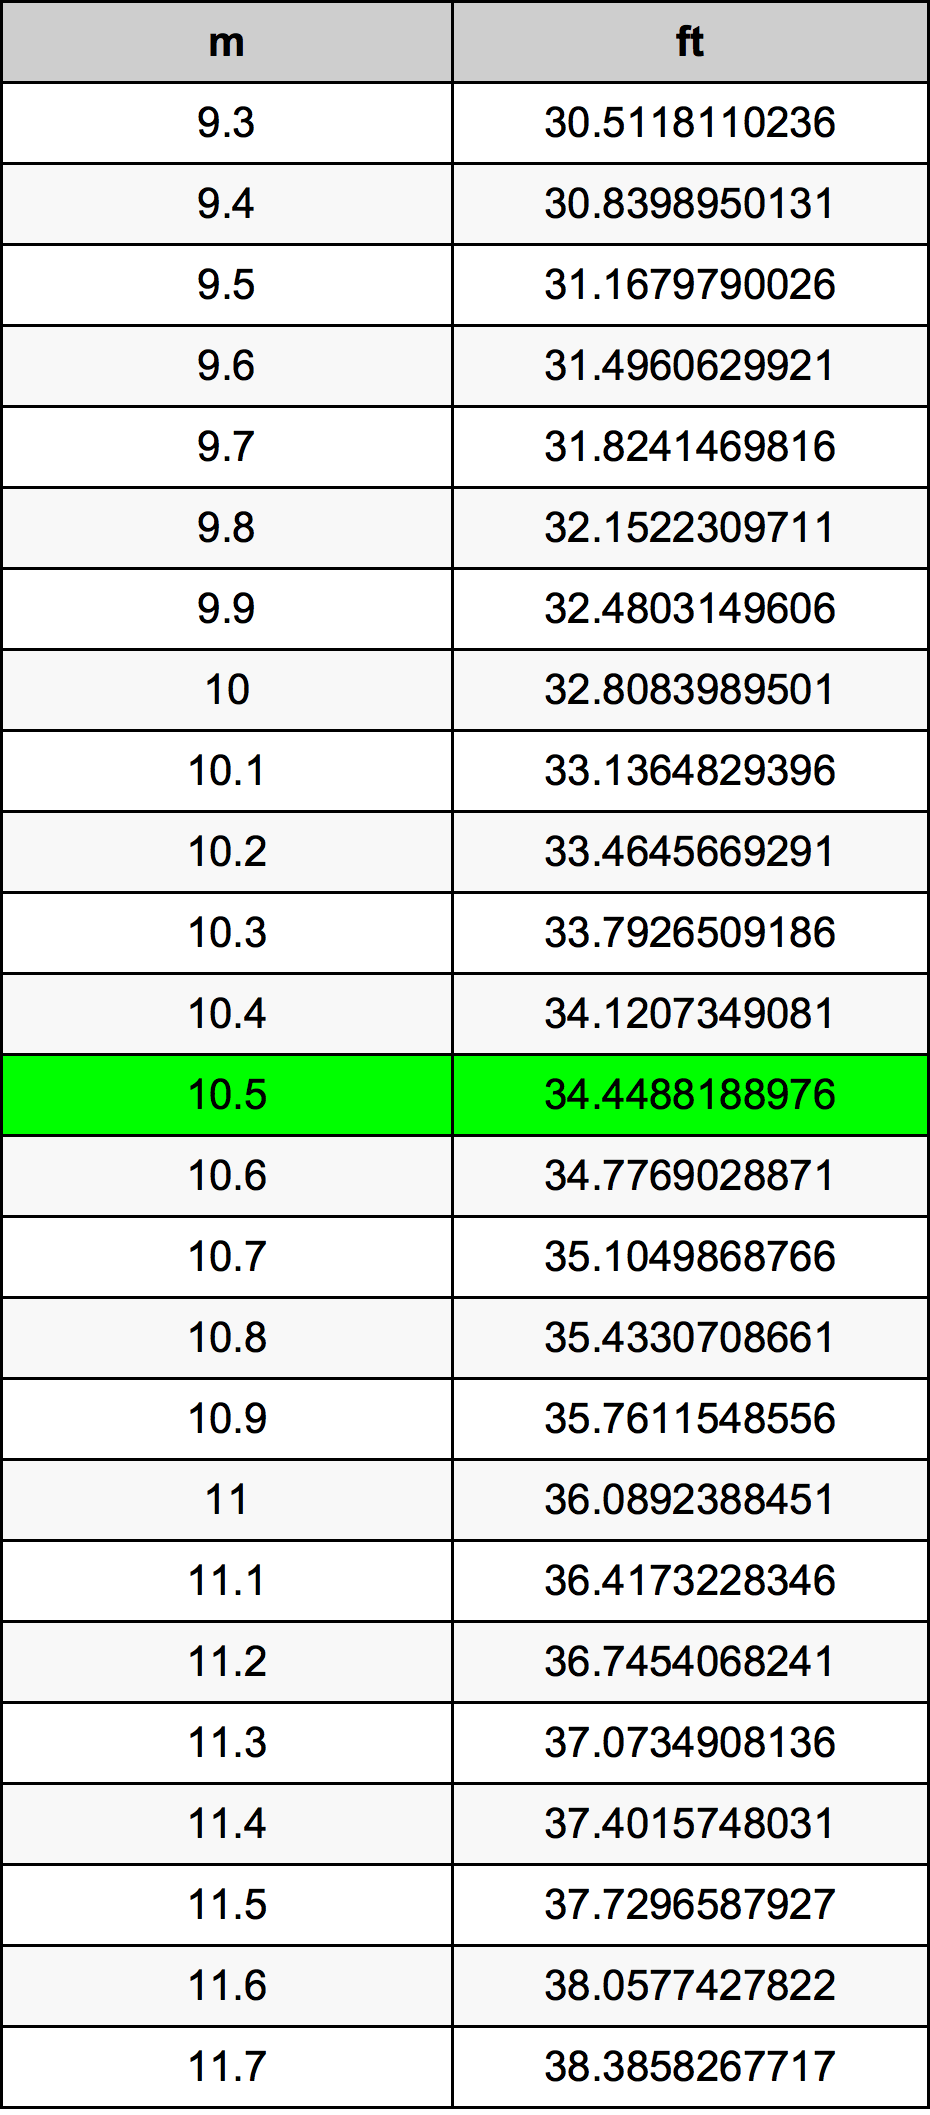 10.5 Metru tabelul de conversie